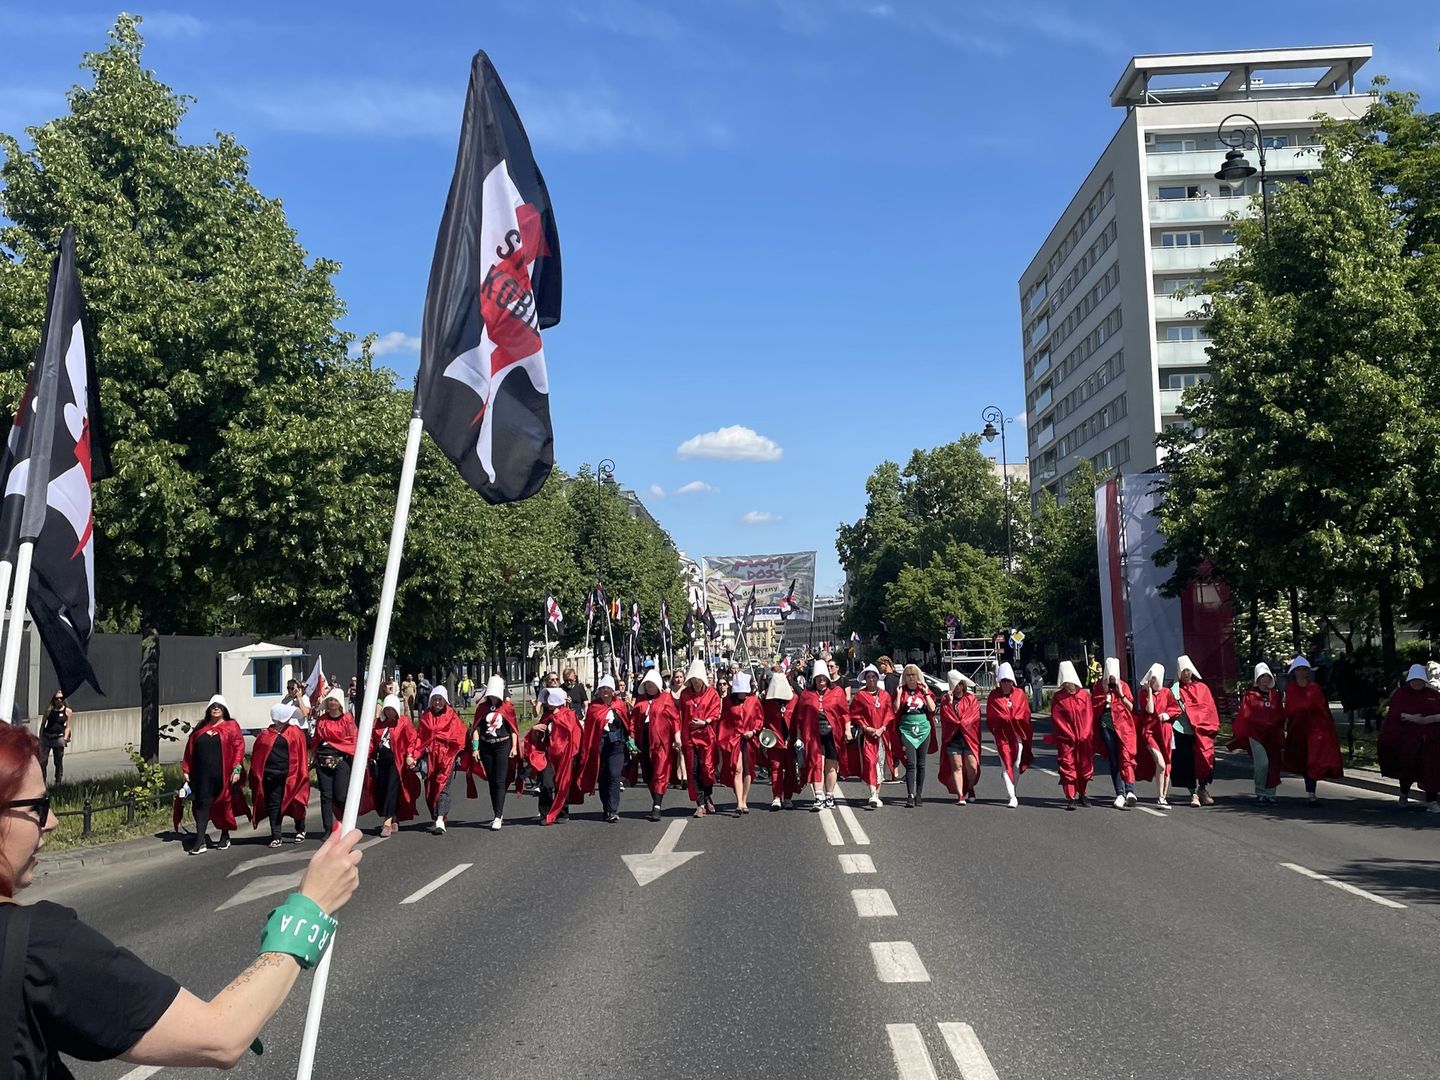 Przyszły na marsz przebrane. Zdjęcia z Warszawy niosą się w sieci